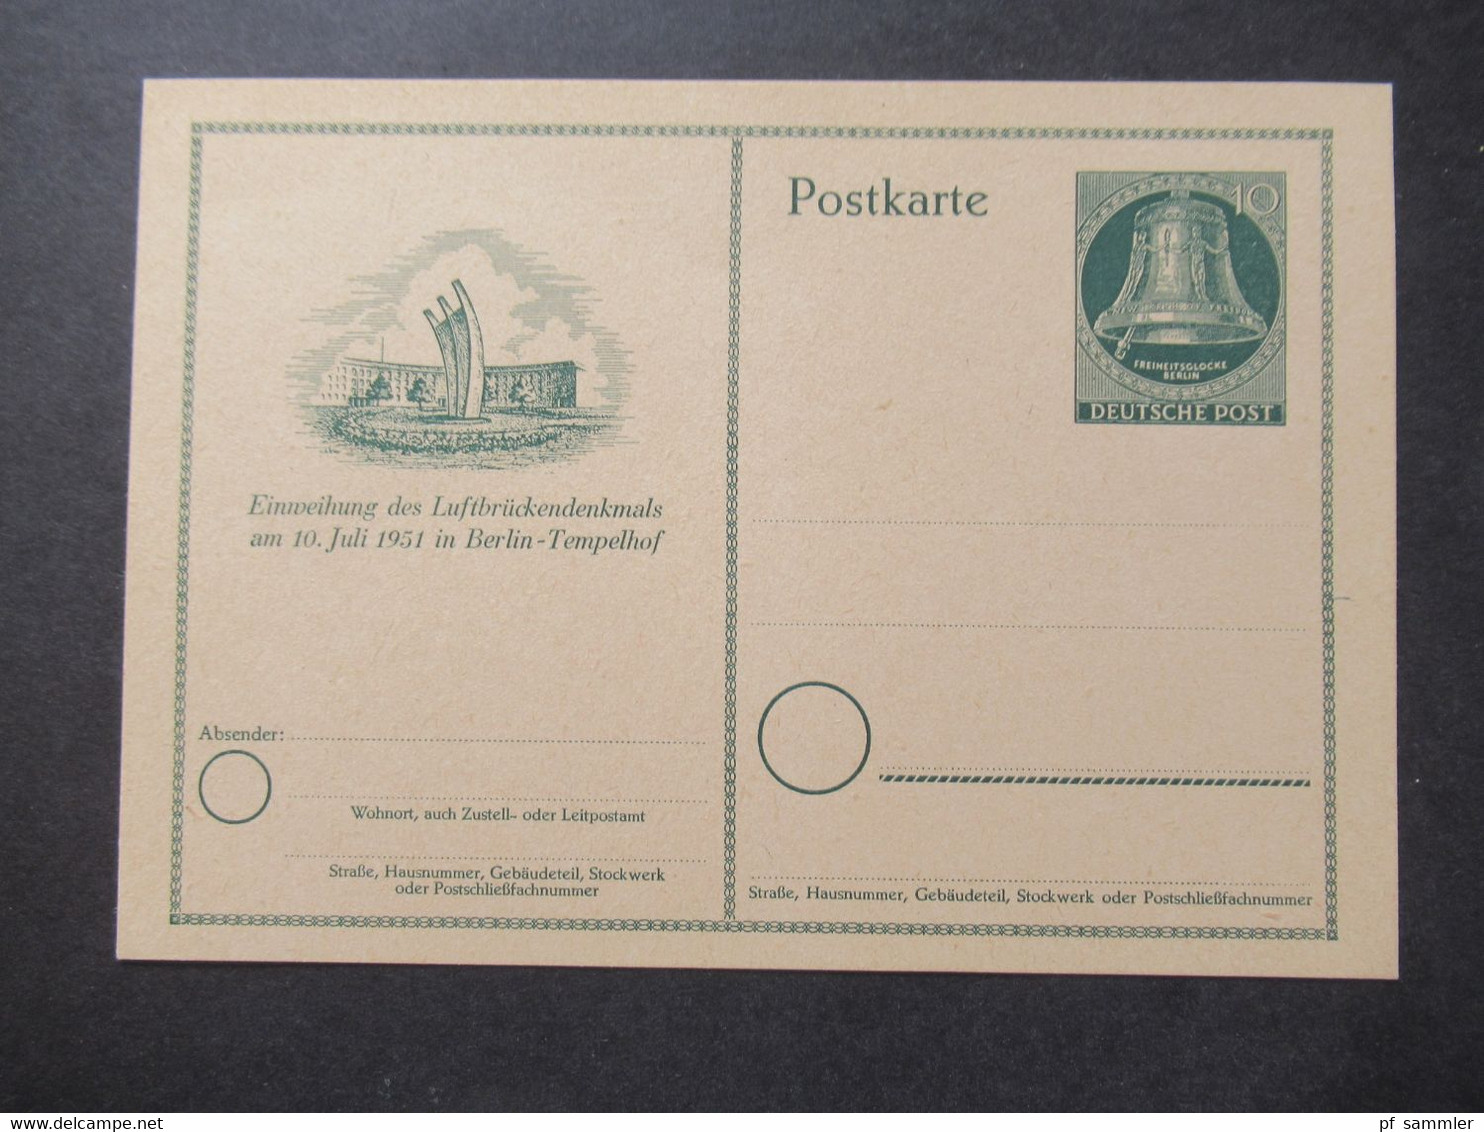 Berlin (West) 1951 Sonderpostkarte Einweihung Des Luftbrückendenkmals Ganzsache P 24 Ungebraucht - Postkarten - Ungebraucht